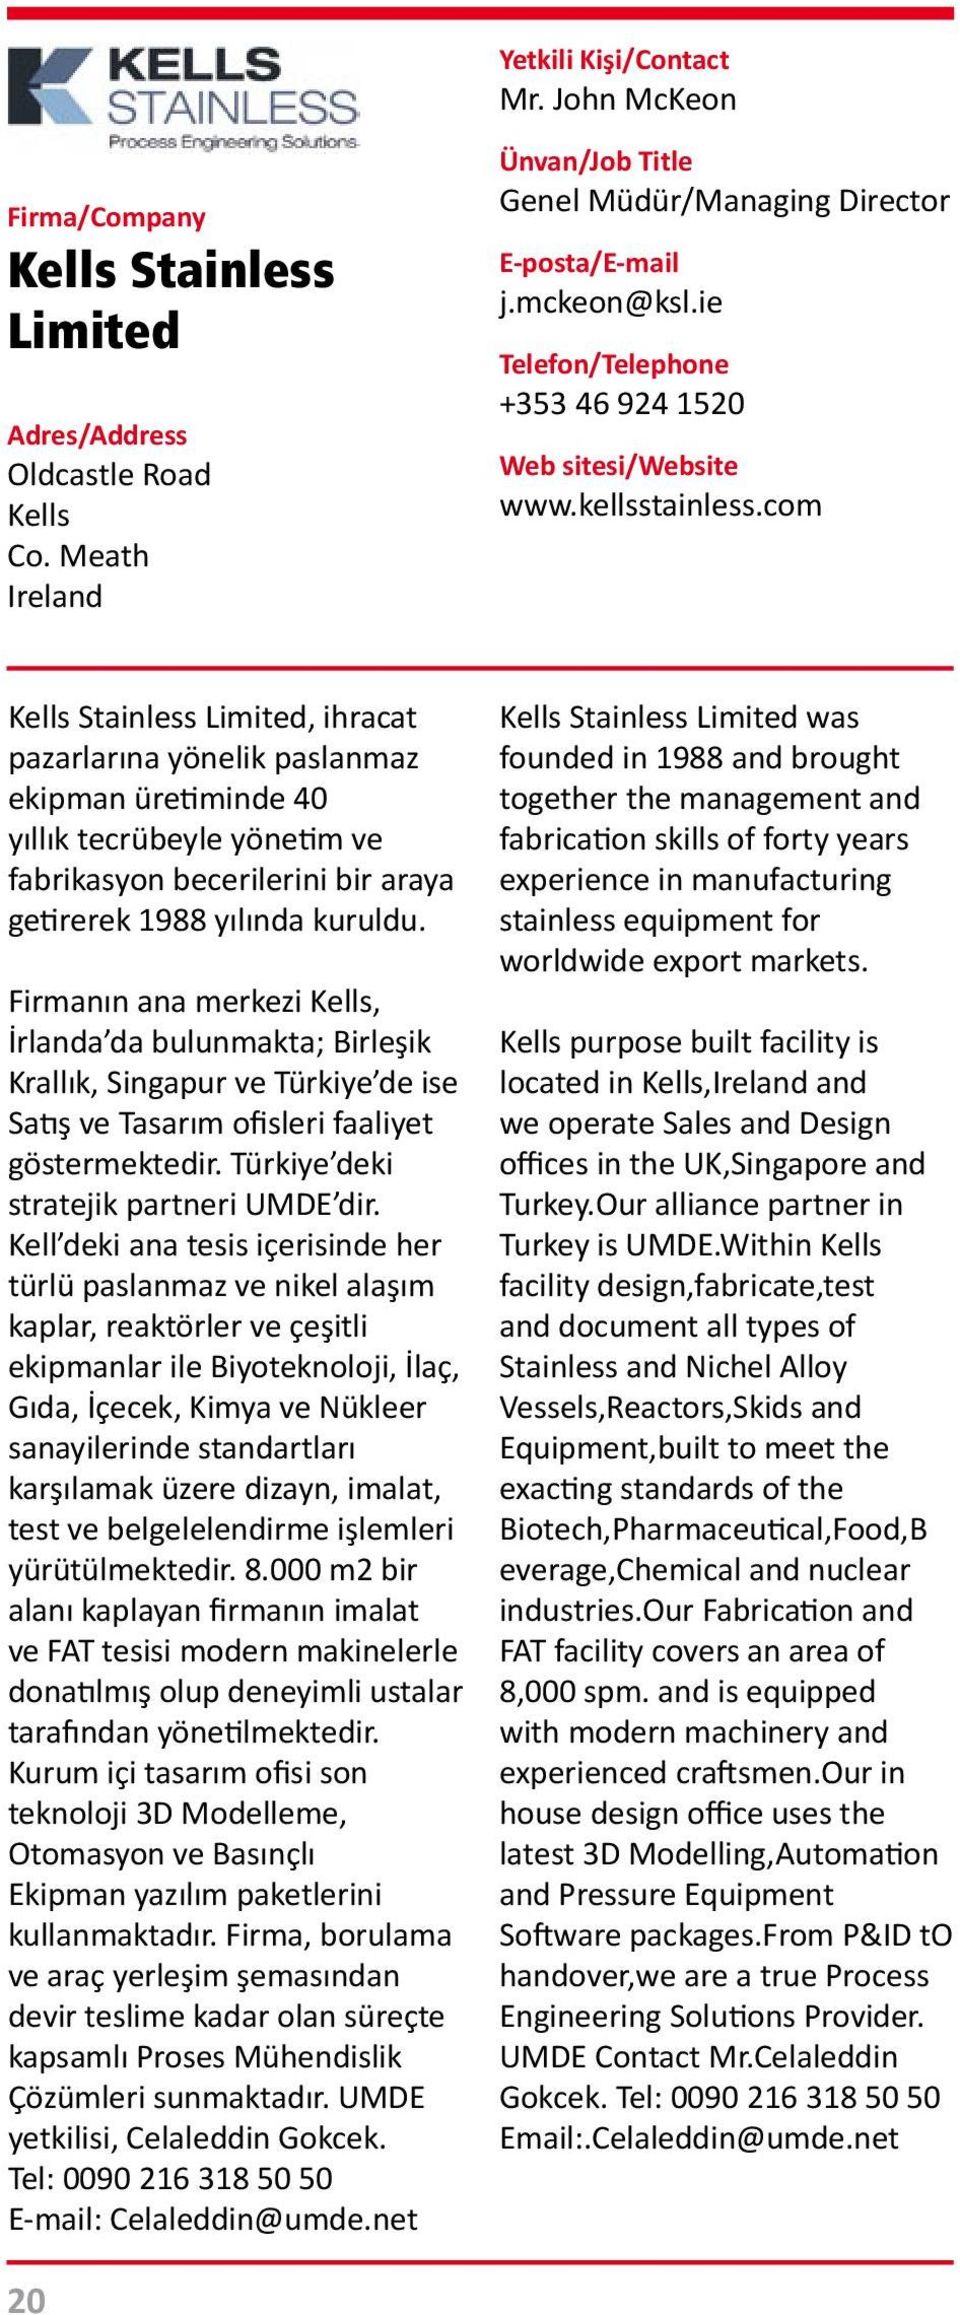 Firmanın ana merkezi Kells, İrlanda da bulunmakta; Birleşik Krallık, Singapur ve Türkiye de ise Satış ve Tasarım ofisleri faaliyet göstermektedir. Türkiye deki stratejik partneri UMDE dir.